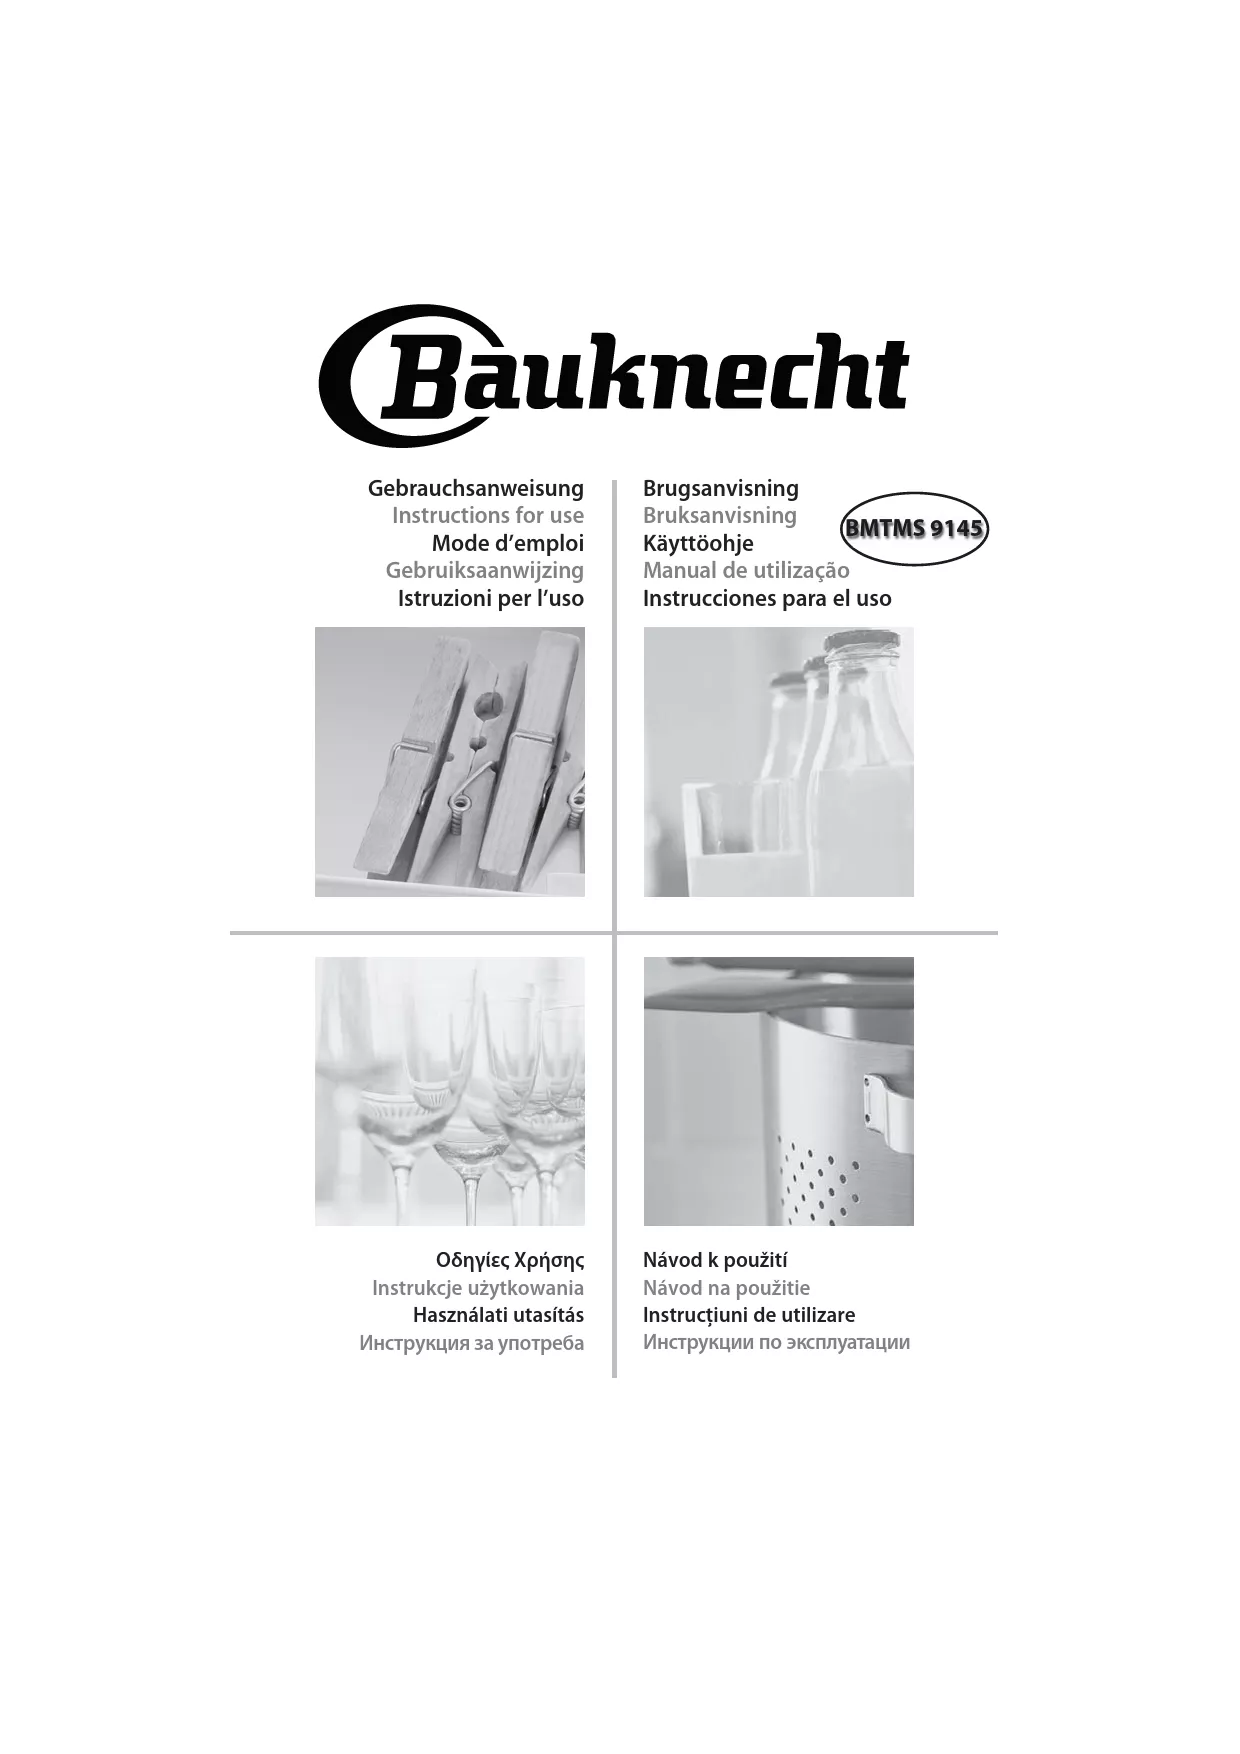 Mode d'emploi BAUKNECHT BMTMS 9145 PT